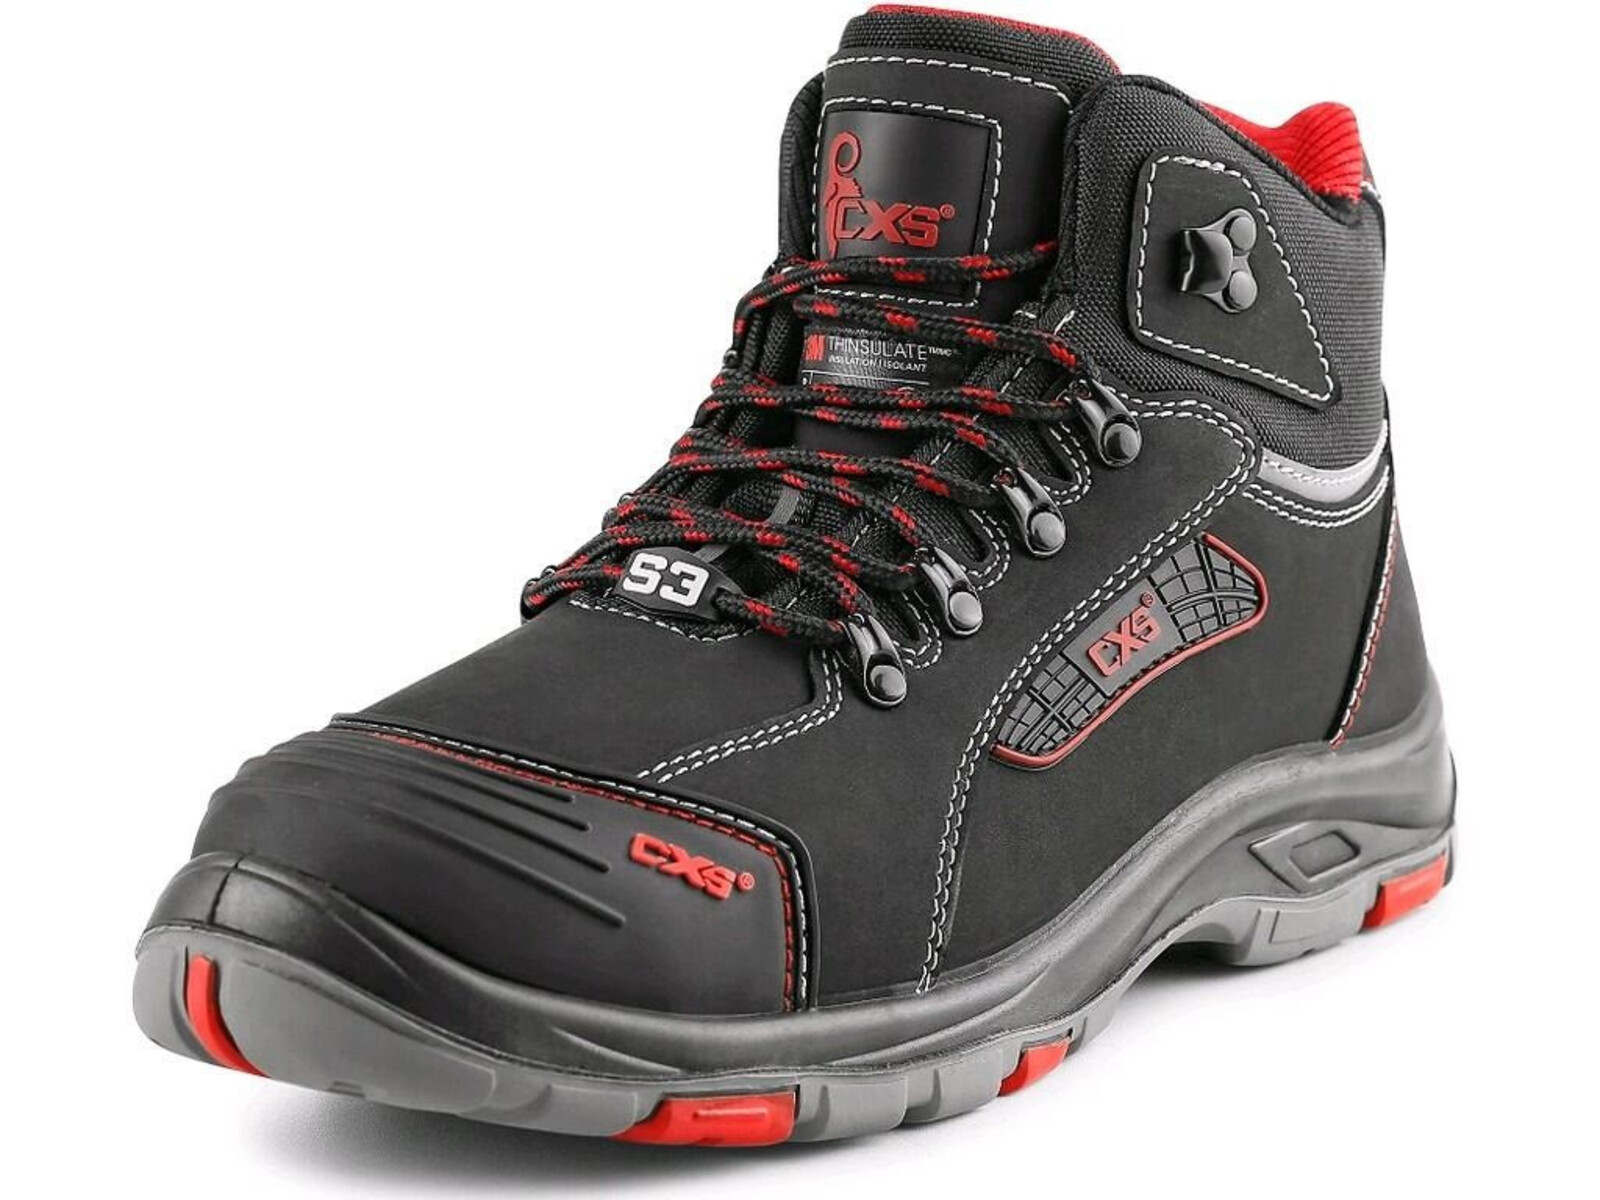 Zateplená bezpečnostná členková obuv CXS Rock Peprit S3 CI HRO SRC - veľkosť: 37, farba: čierna/červená